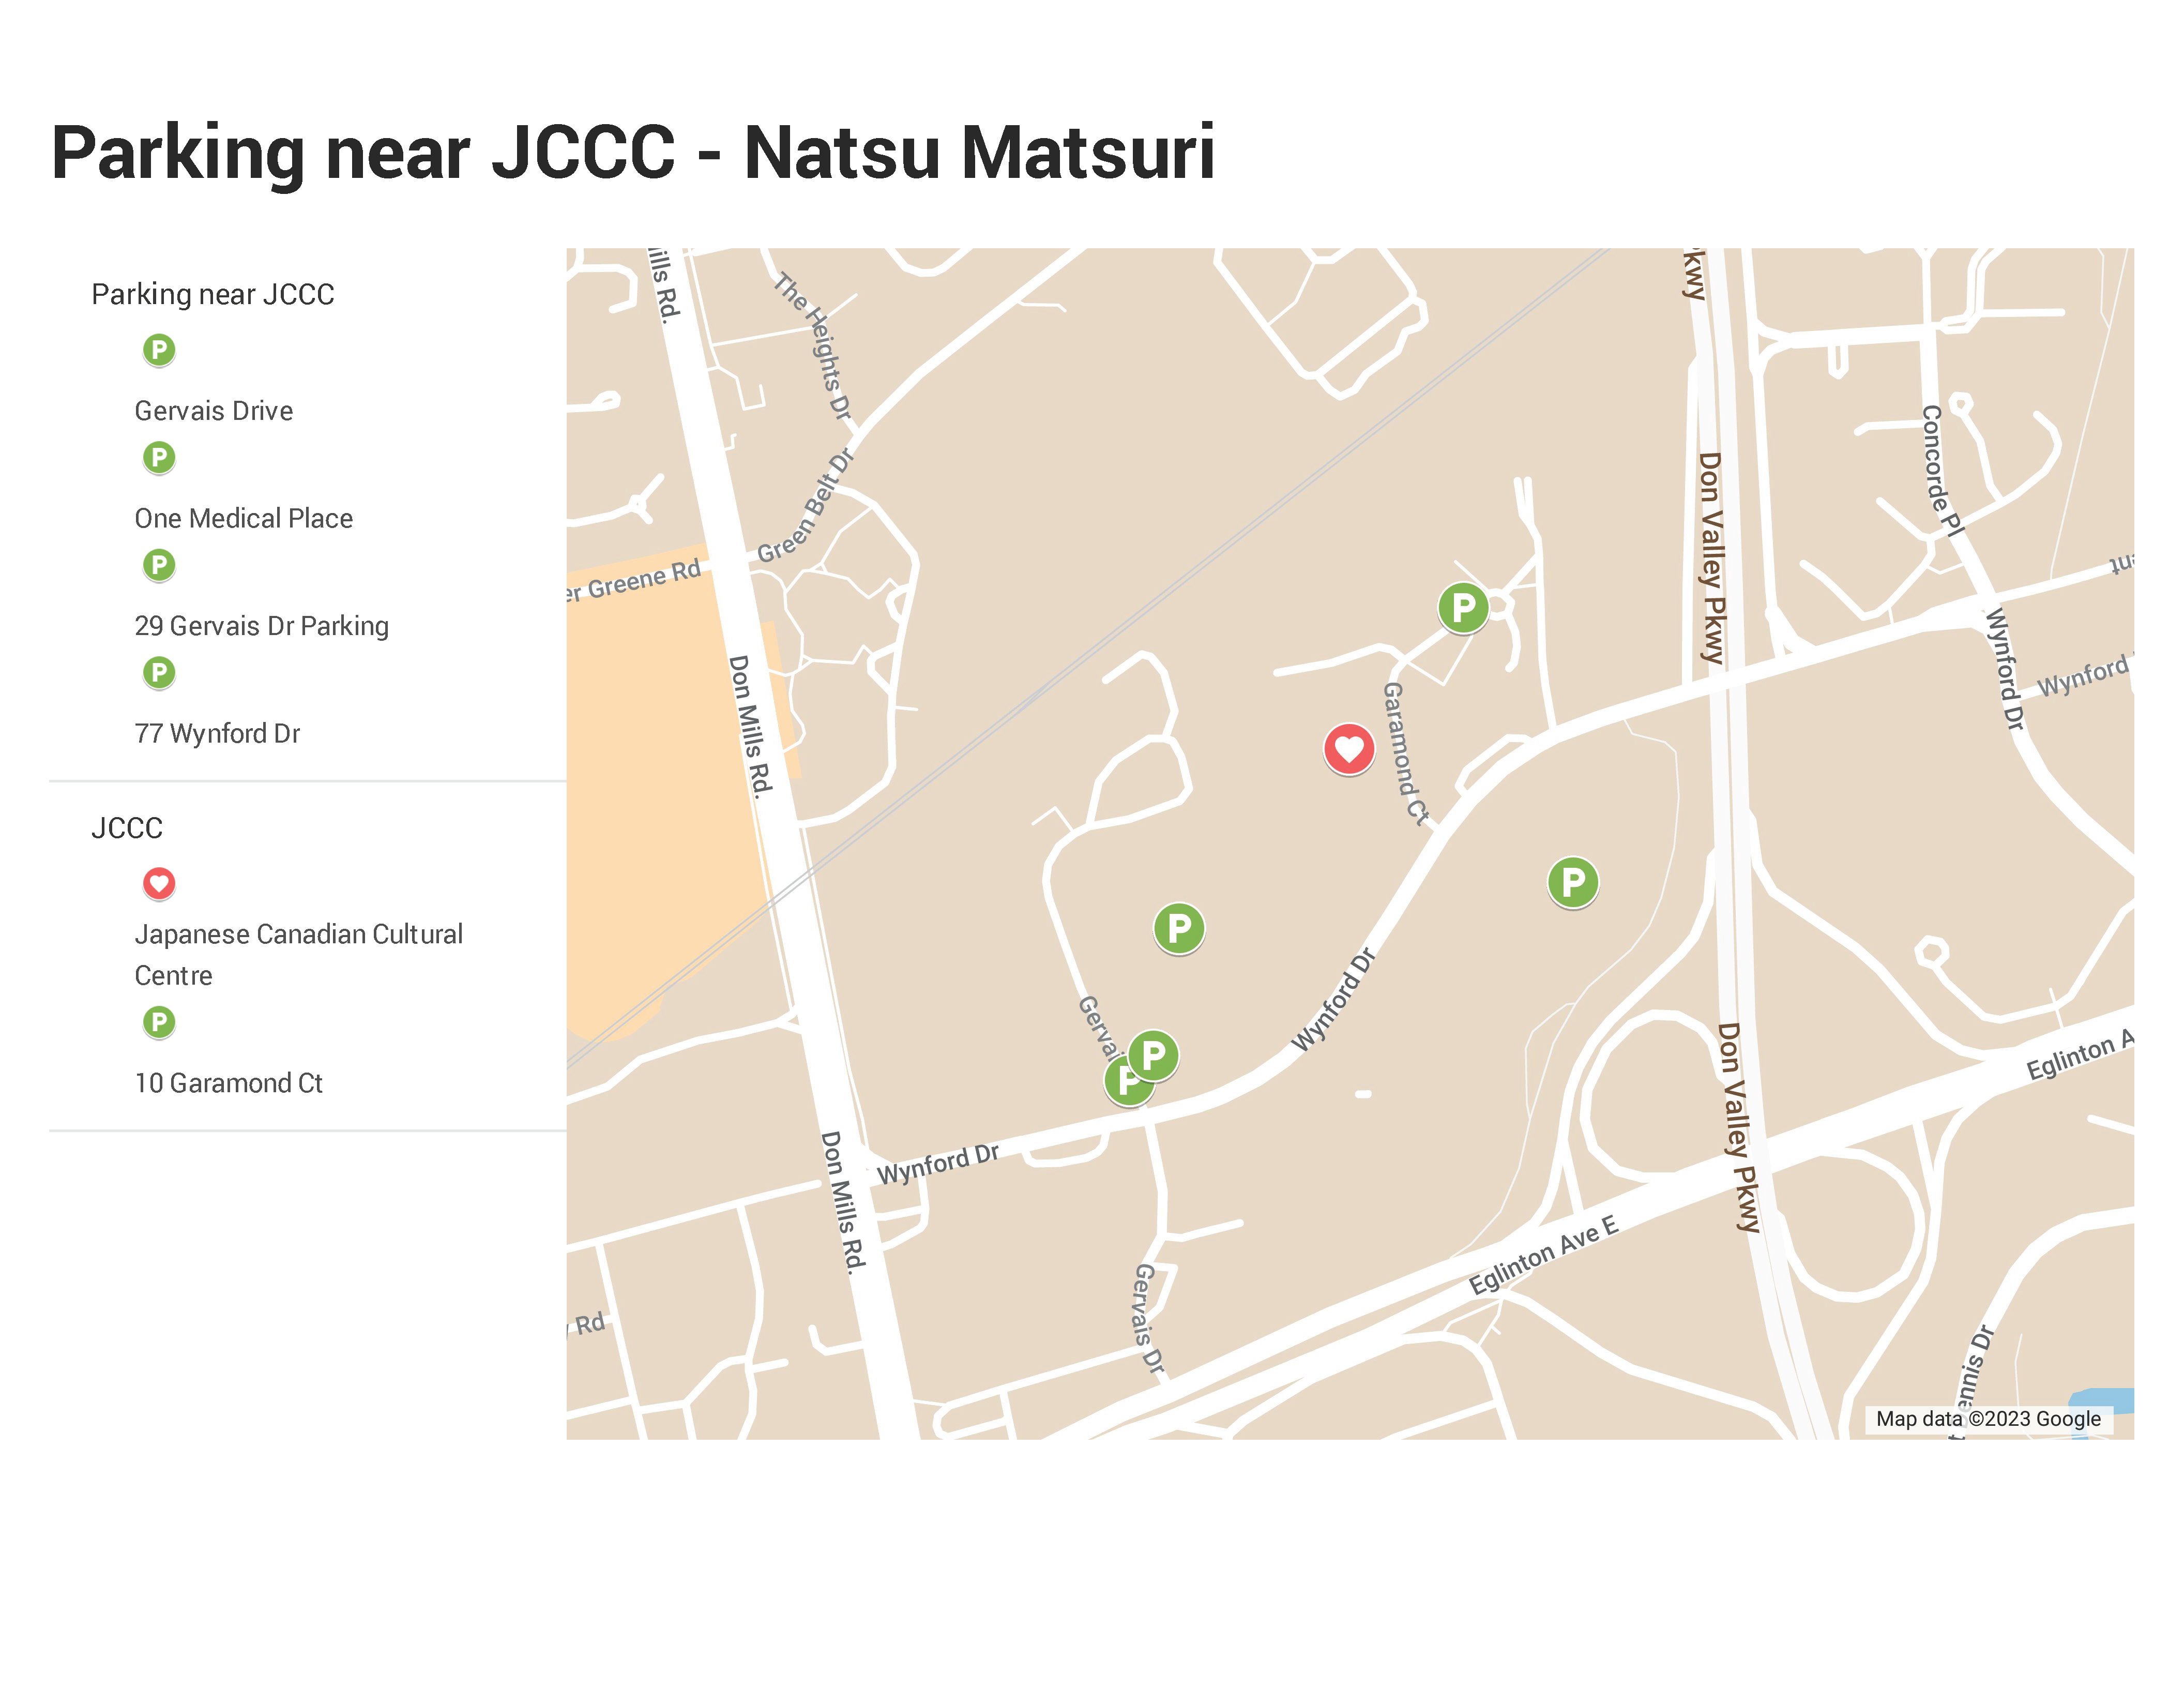 Parking for Natsu Matsuri 